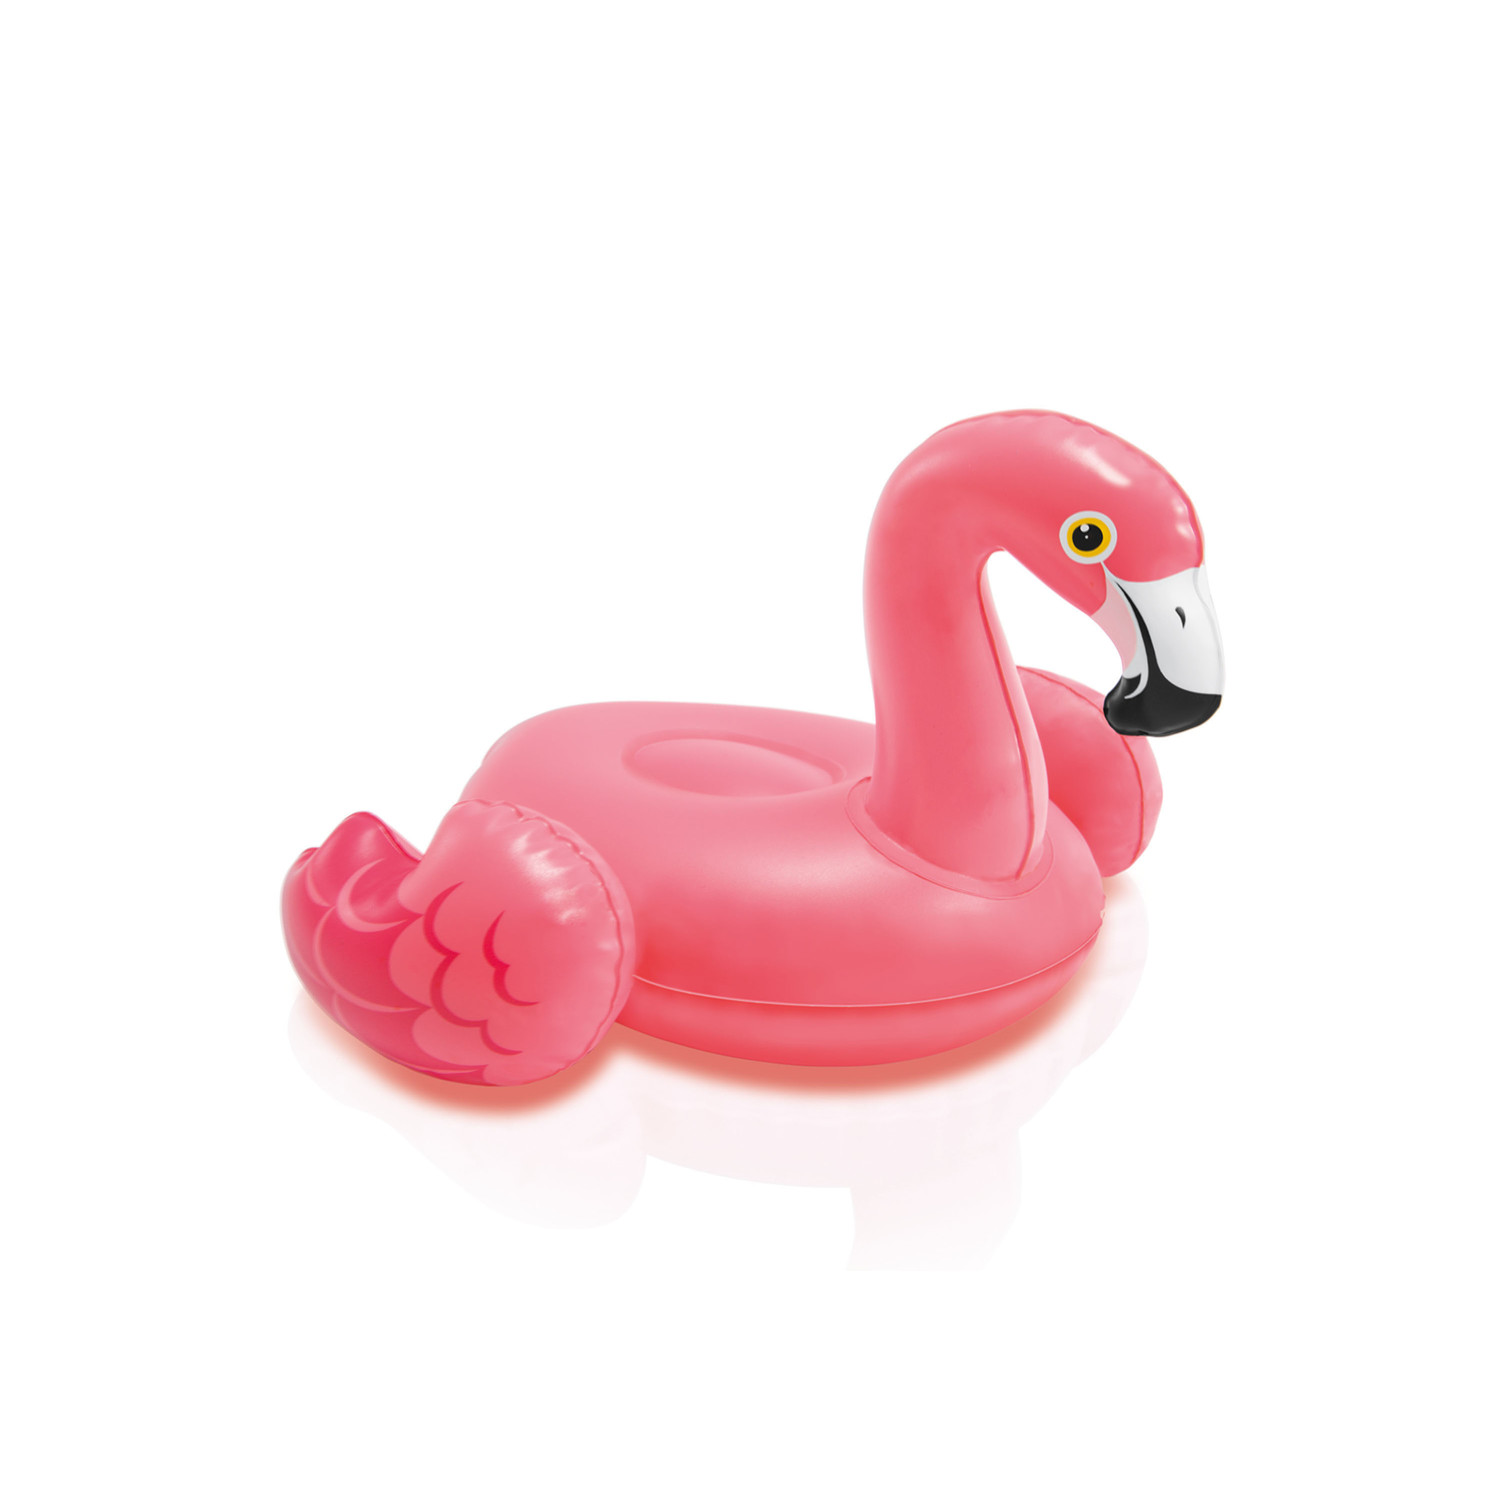 Grote waanidee biologisch surfen Kleine opblaas flamingo kopen? | Zwembadkopen.nl - Zwembadkopen.nl